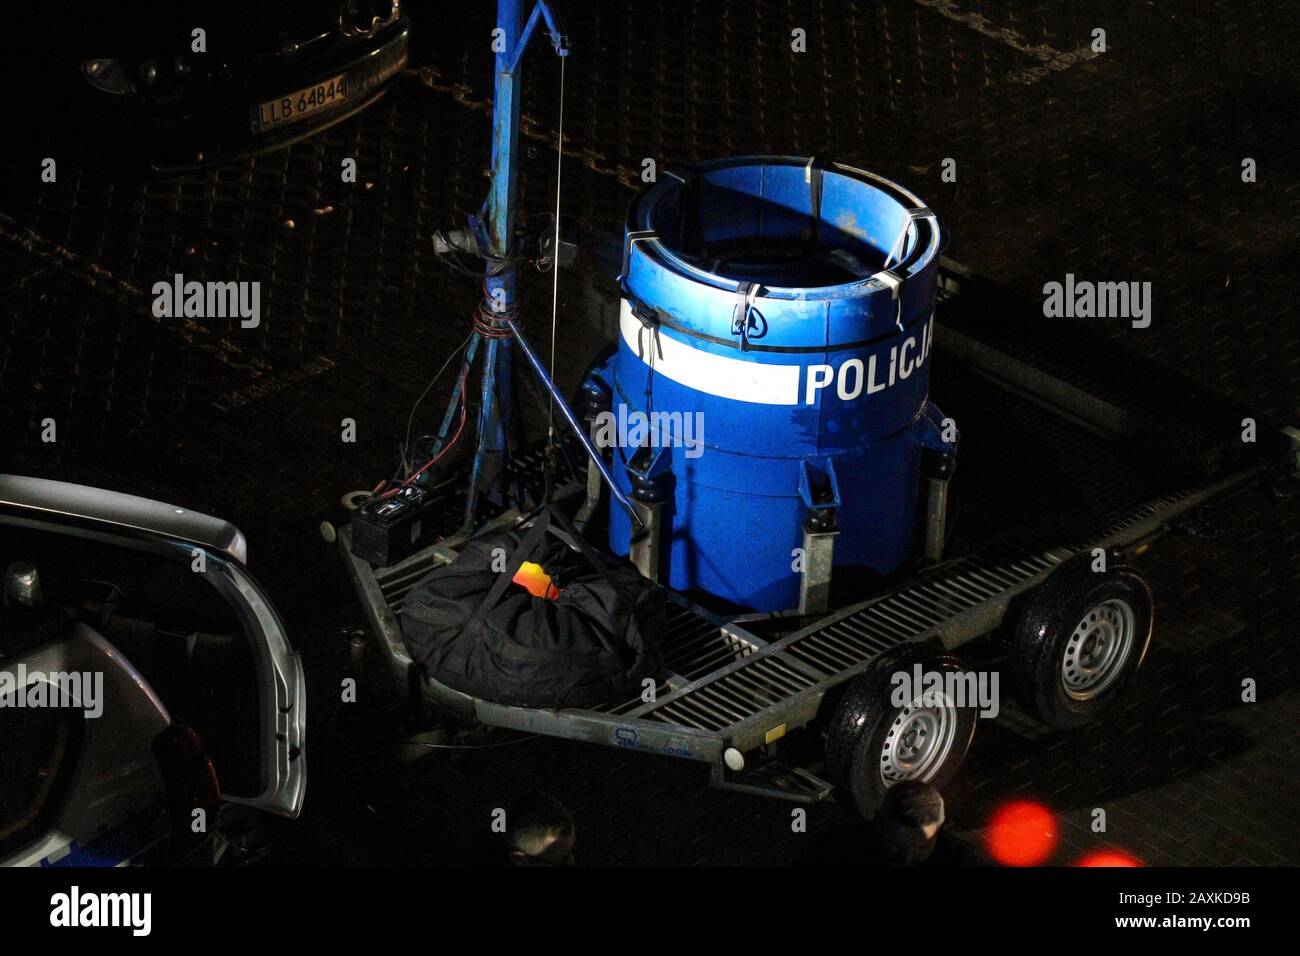 Lubartow, Polen - 11. februar 2020: Transportfass der Polizeibombenentsorgungseinheit während der Aktion der Neutralisierung von gefährlichen explosiven Stoffen gefunden Stockfoto